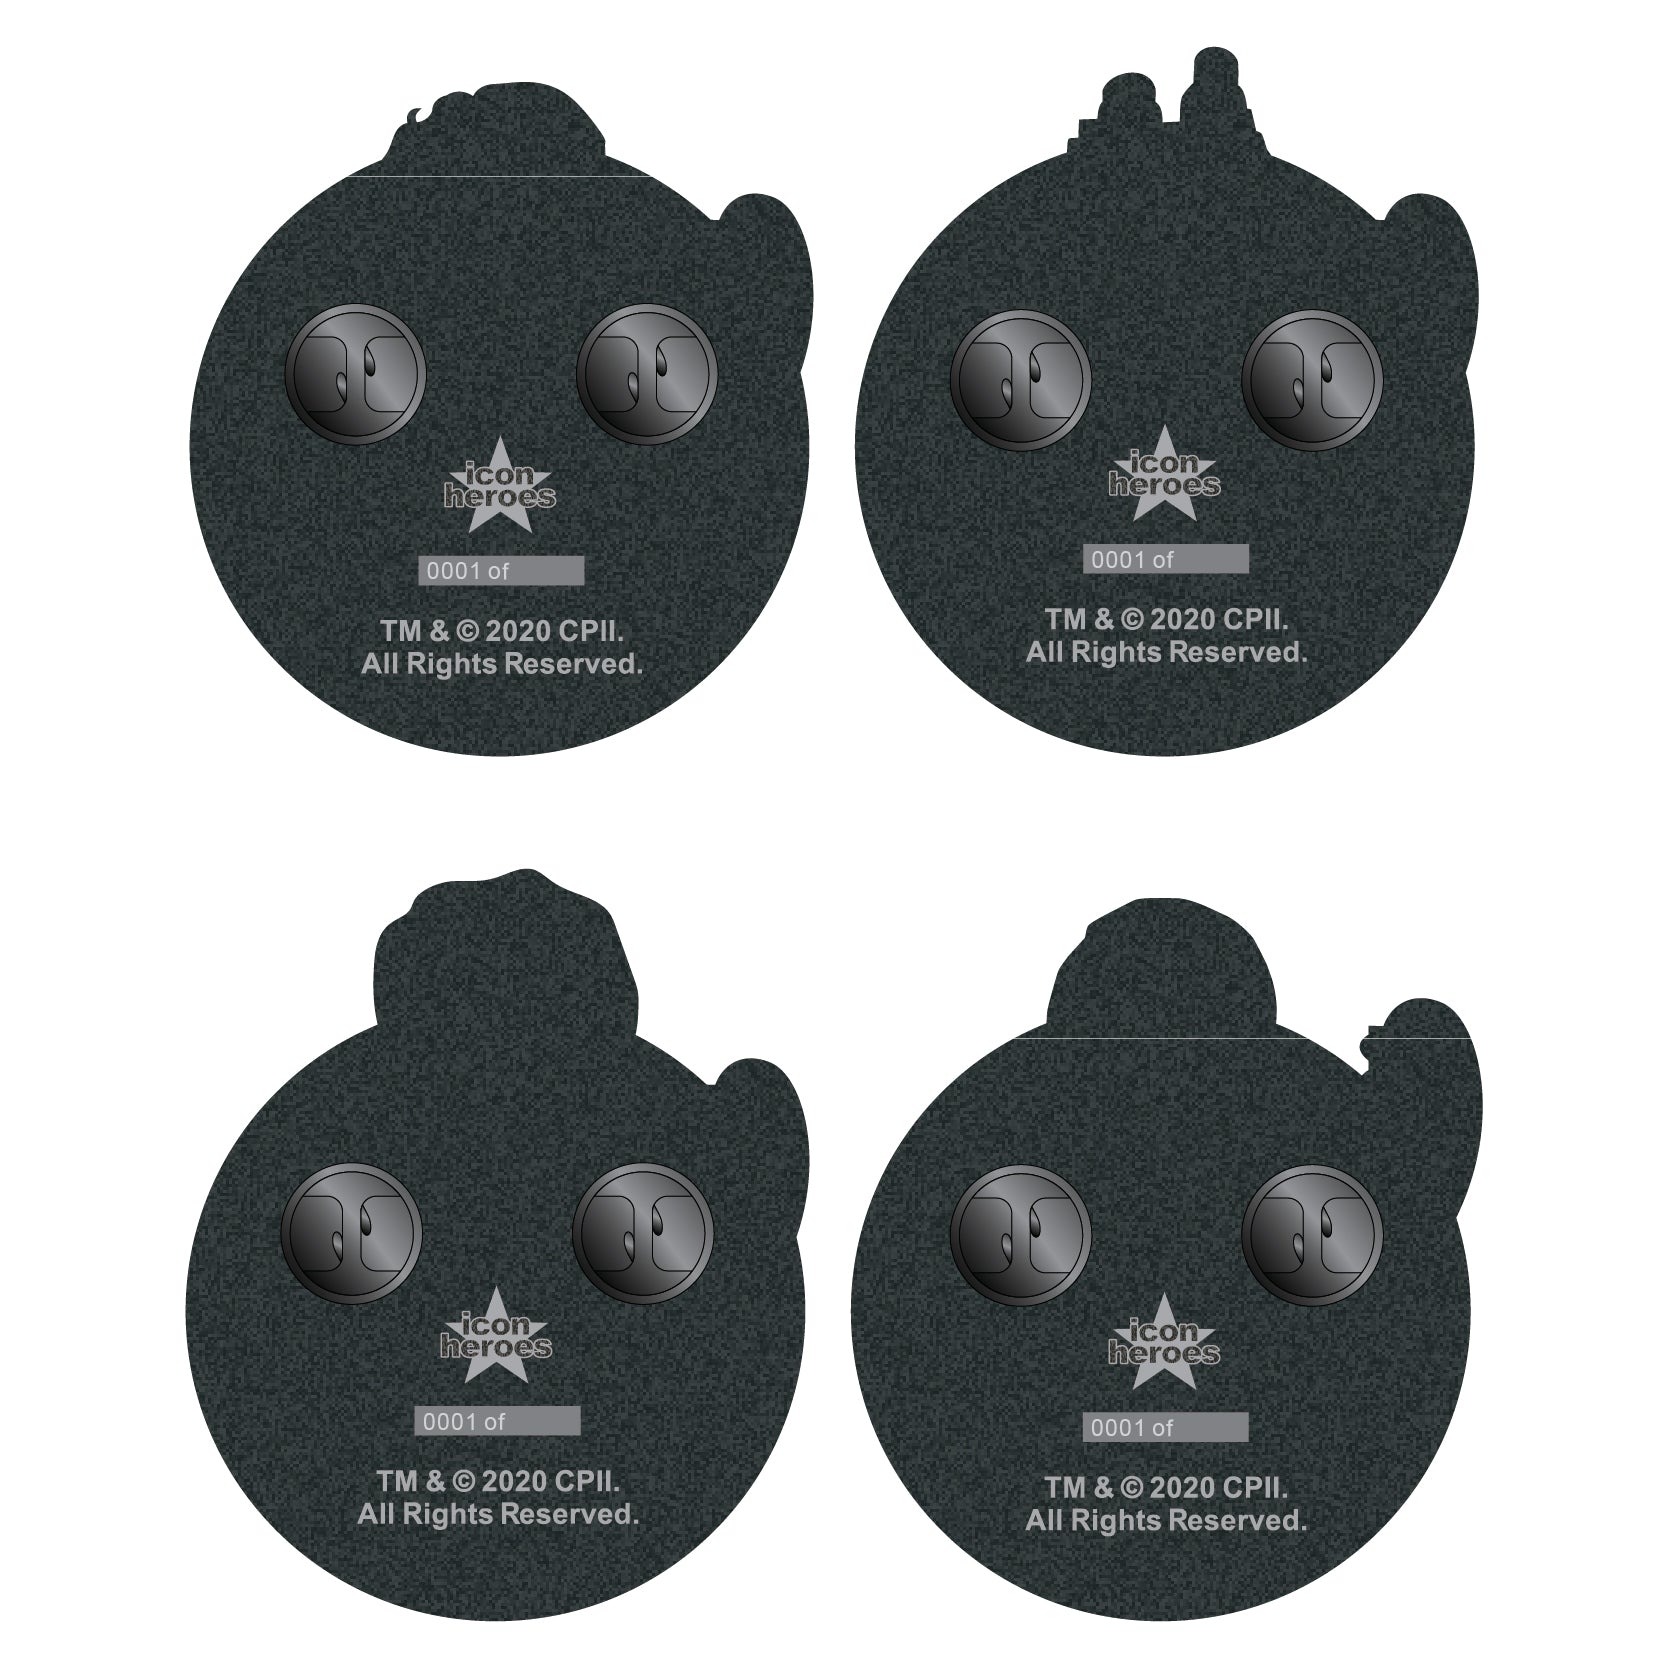 Ghostbusters Enamel Pins PinBook Vol. 5 Exclusive - Icon Heroes 